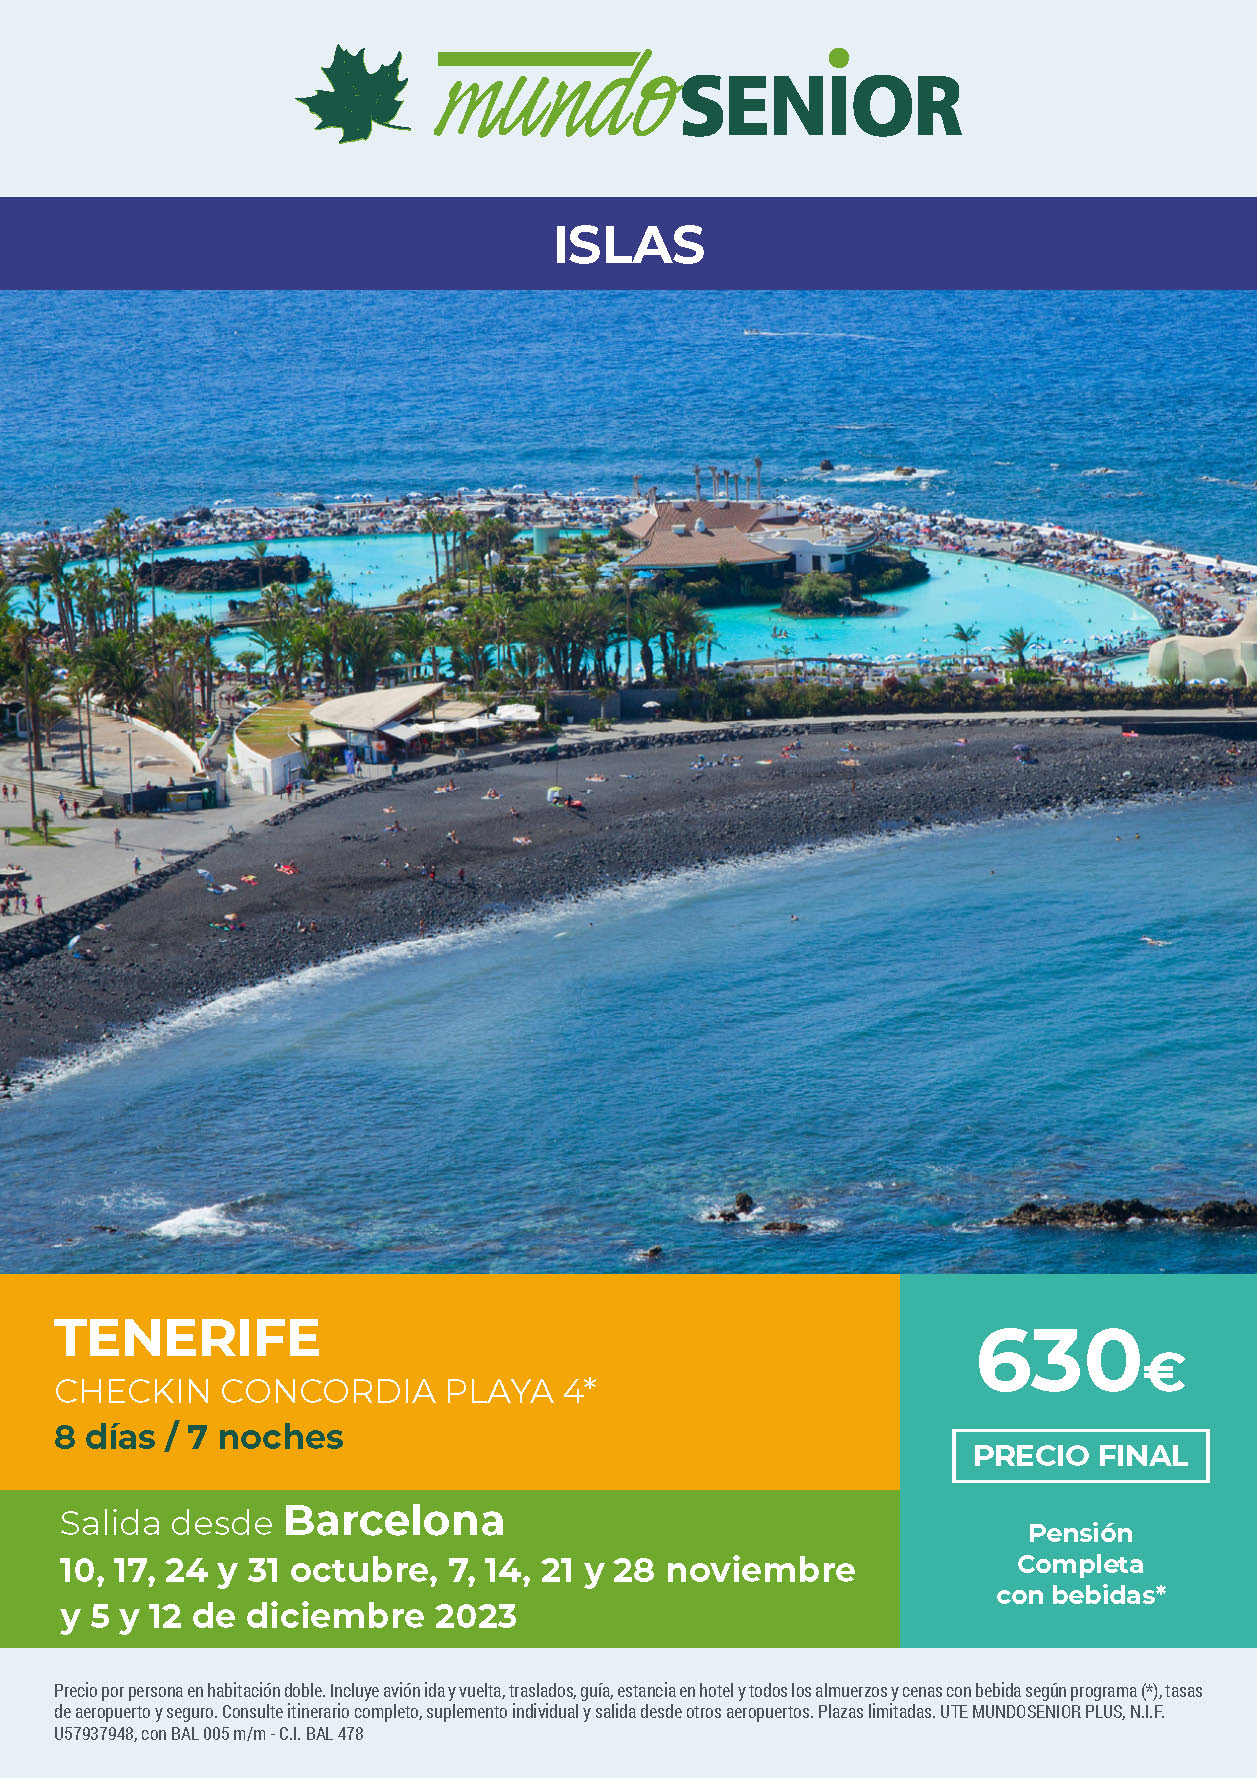 Oferta Mundo Senior Estancia en Tenerife 8 dias hotel 4 estrellas pension completa salidas octubre noviembre y diciembre 2023 desde Barcelona